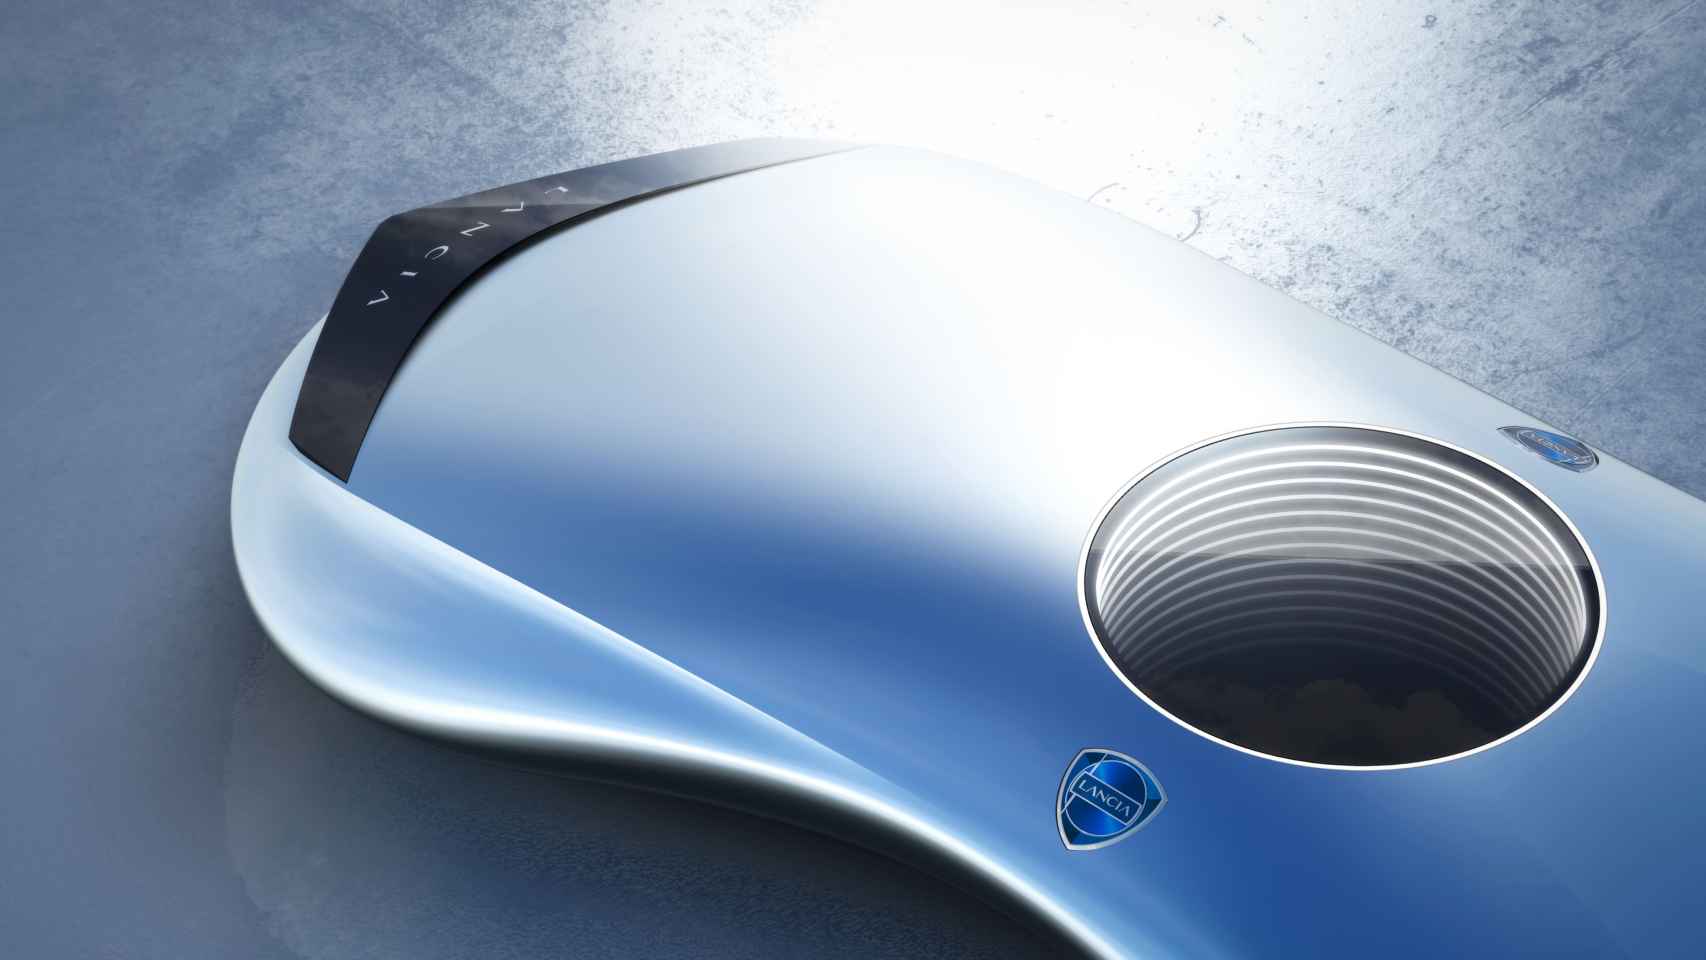 Lancia combinará lo mejor de su pasado con nuevas formas y elementos futuristas.